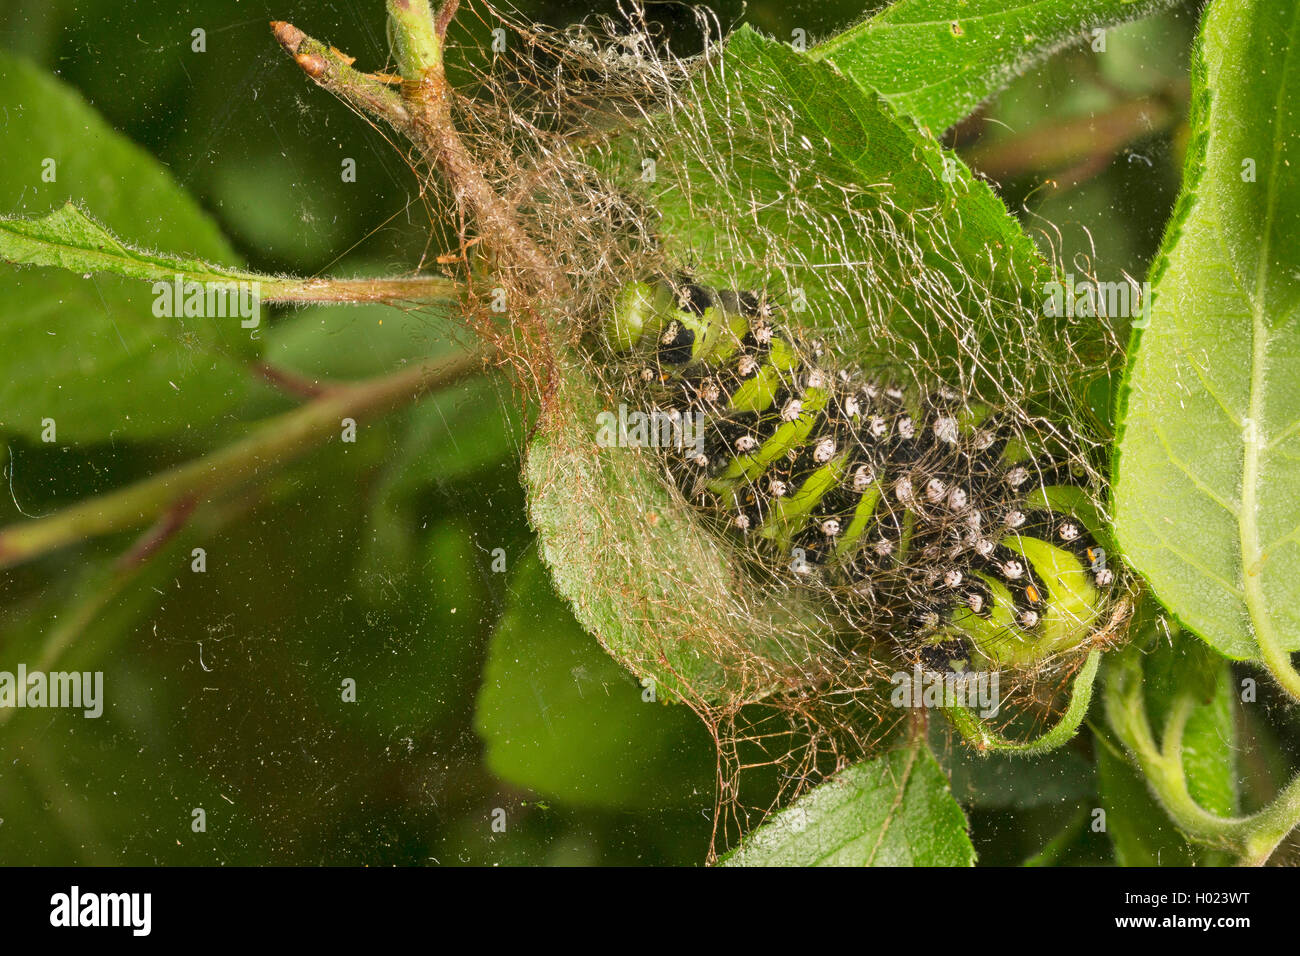 Emperor moth, Small Emperor Moth (Saturnia pavonia, Eudia pavonia, Pavonia pavonia), caterpillar spinning a cocoon, Germany Stock Photo